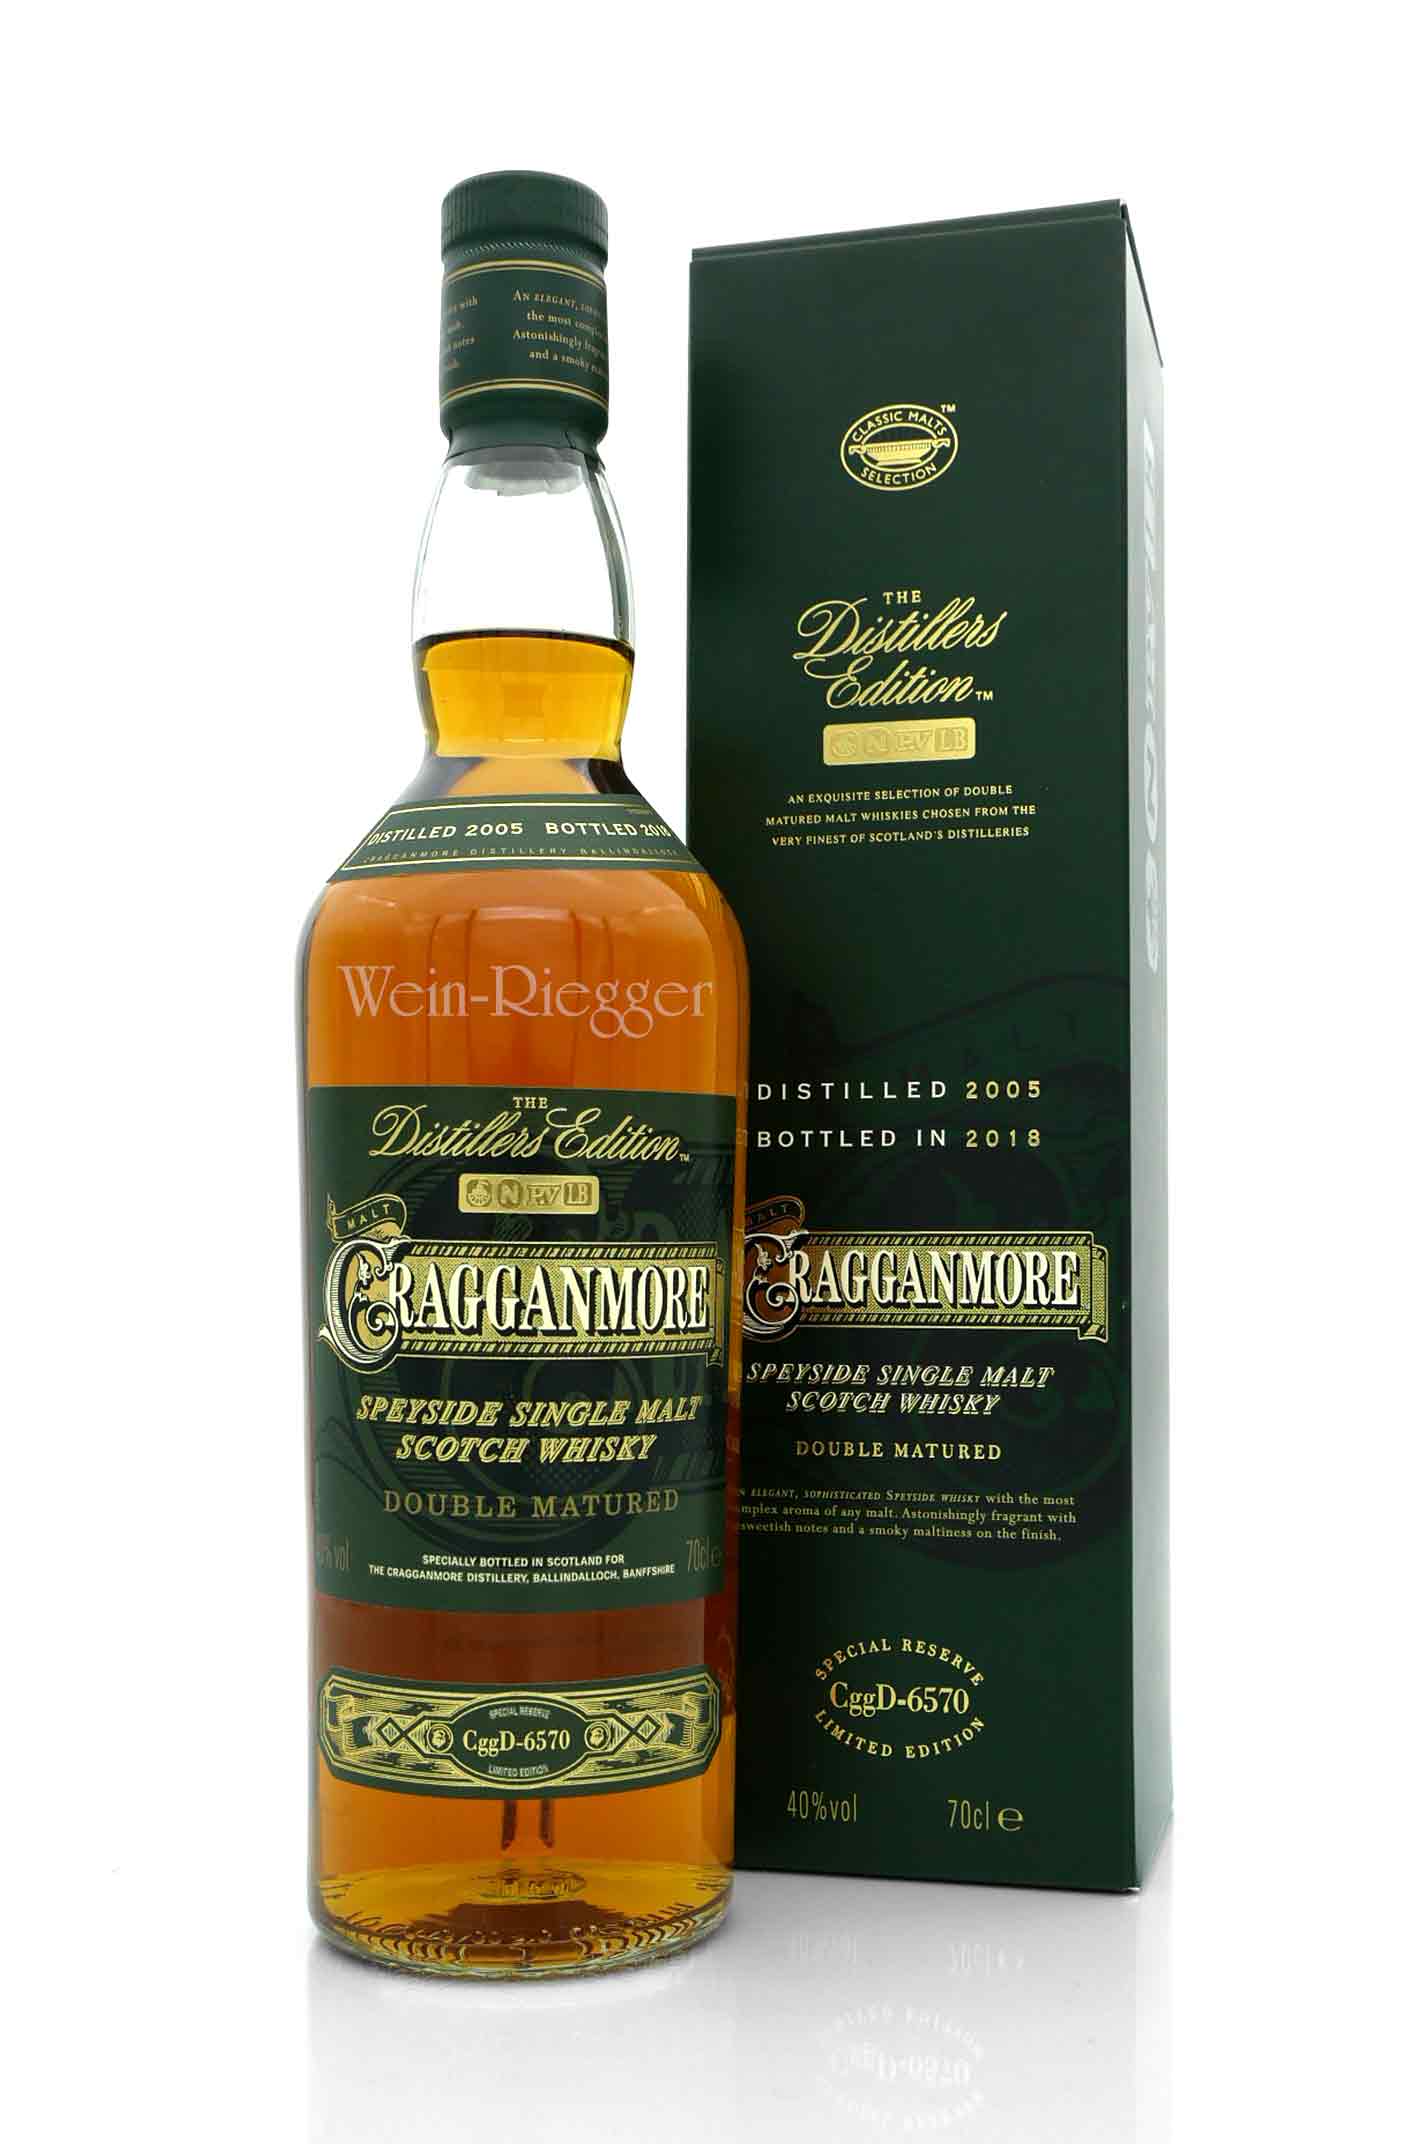 Cragganmore 2005 Distillers Edition 2005/2018 - CggD-6570